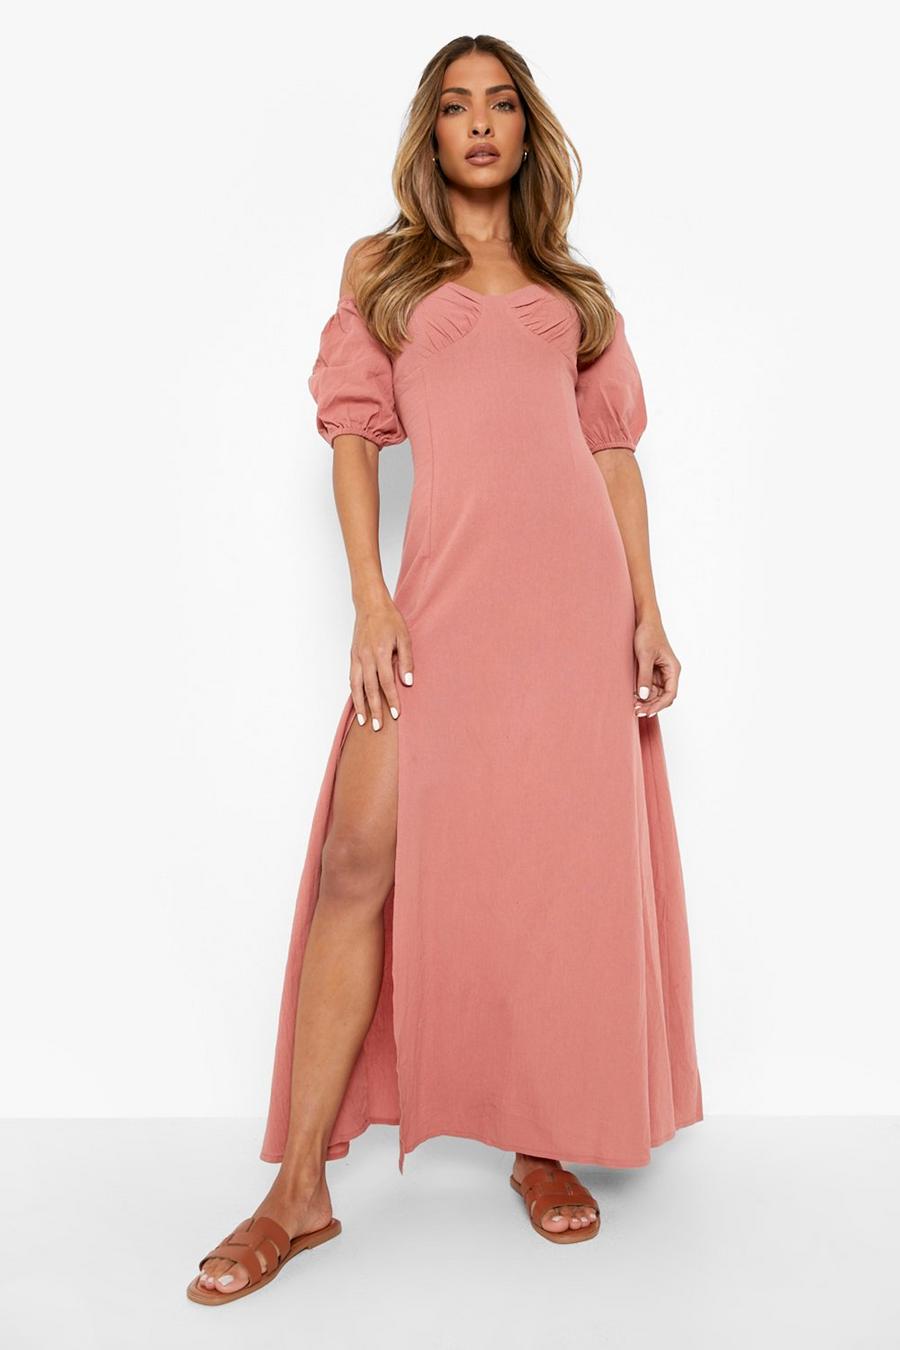 Dusky pink rose Linen Off The Shoulder Split Leg Maxi Dress